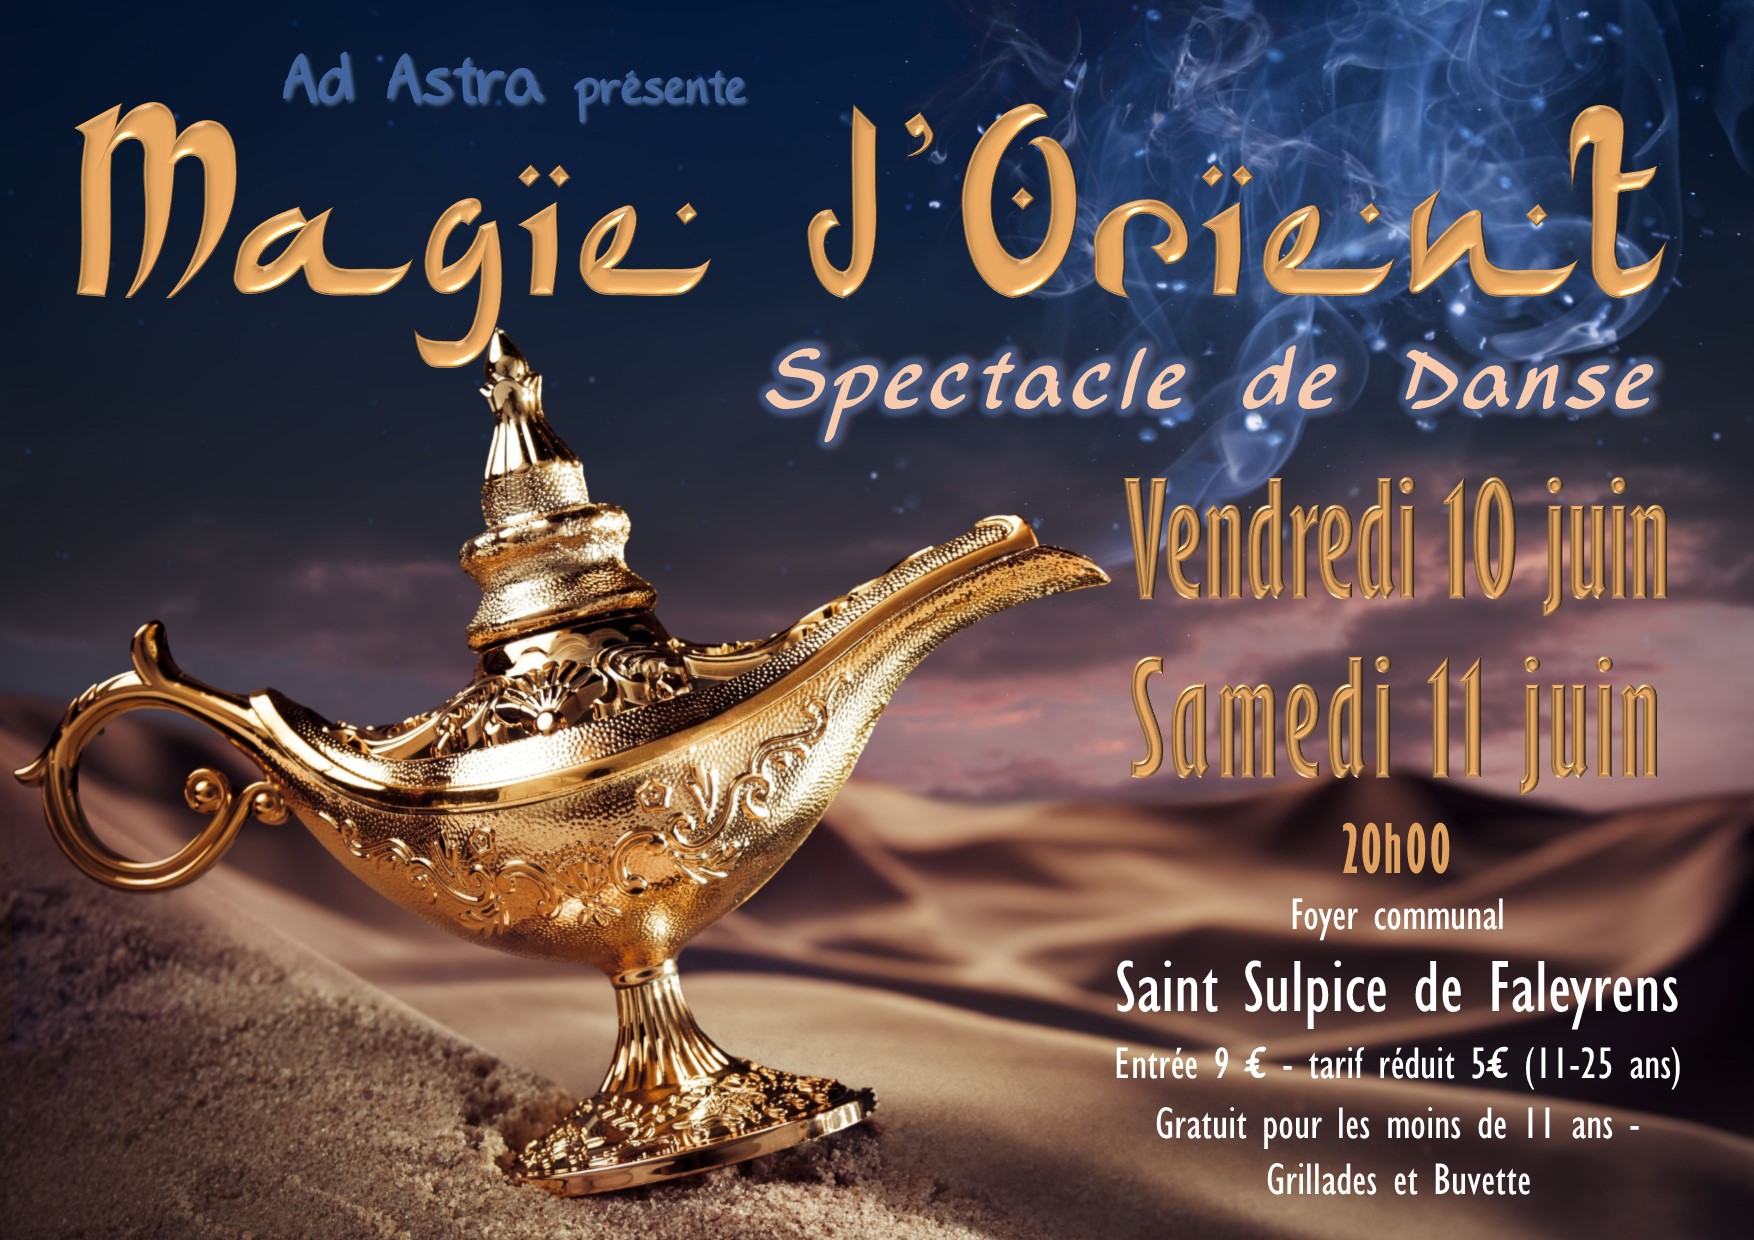 « Magie d’Orient » le spectacle de danse d’Ad Astra